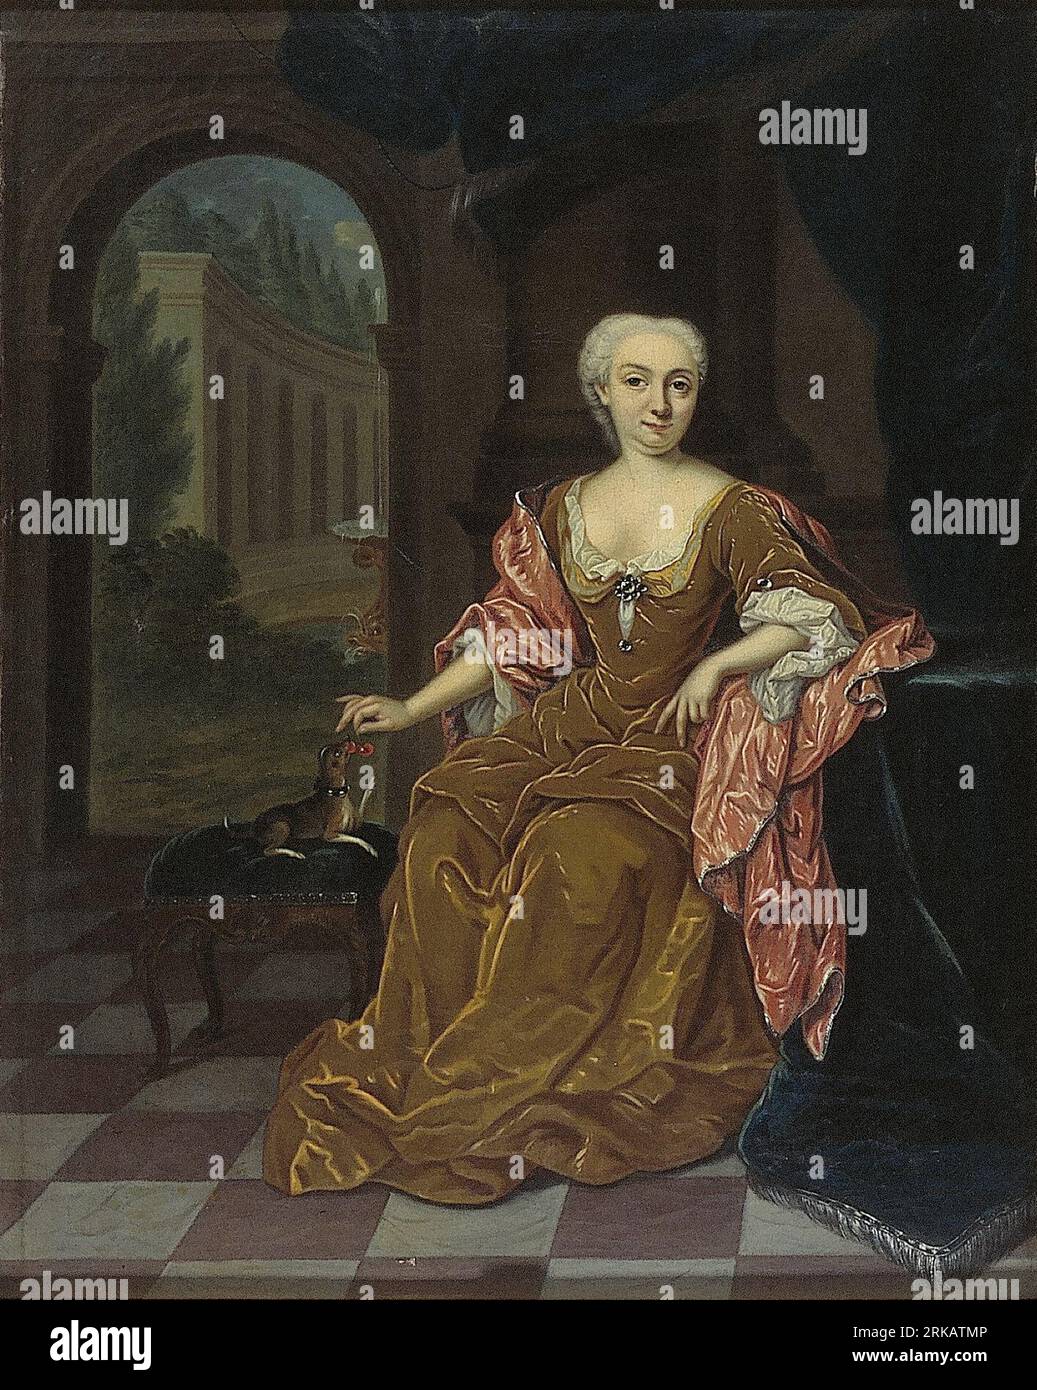 Isabella Sophia van de Maelen (1702-1788) between 1731 and 1752 by Theodorus Caenen Stock Photo